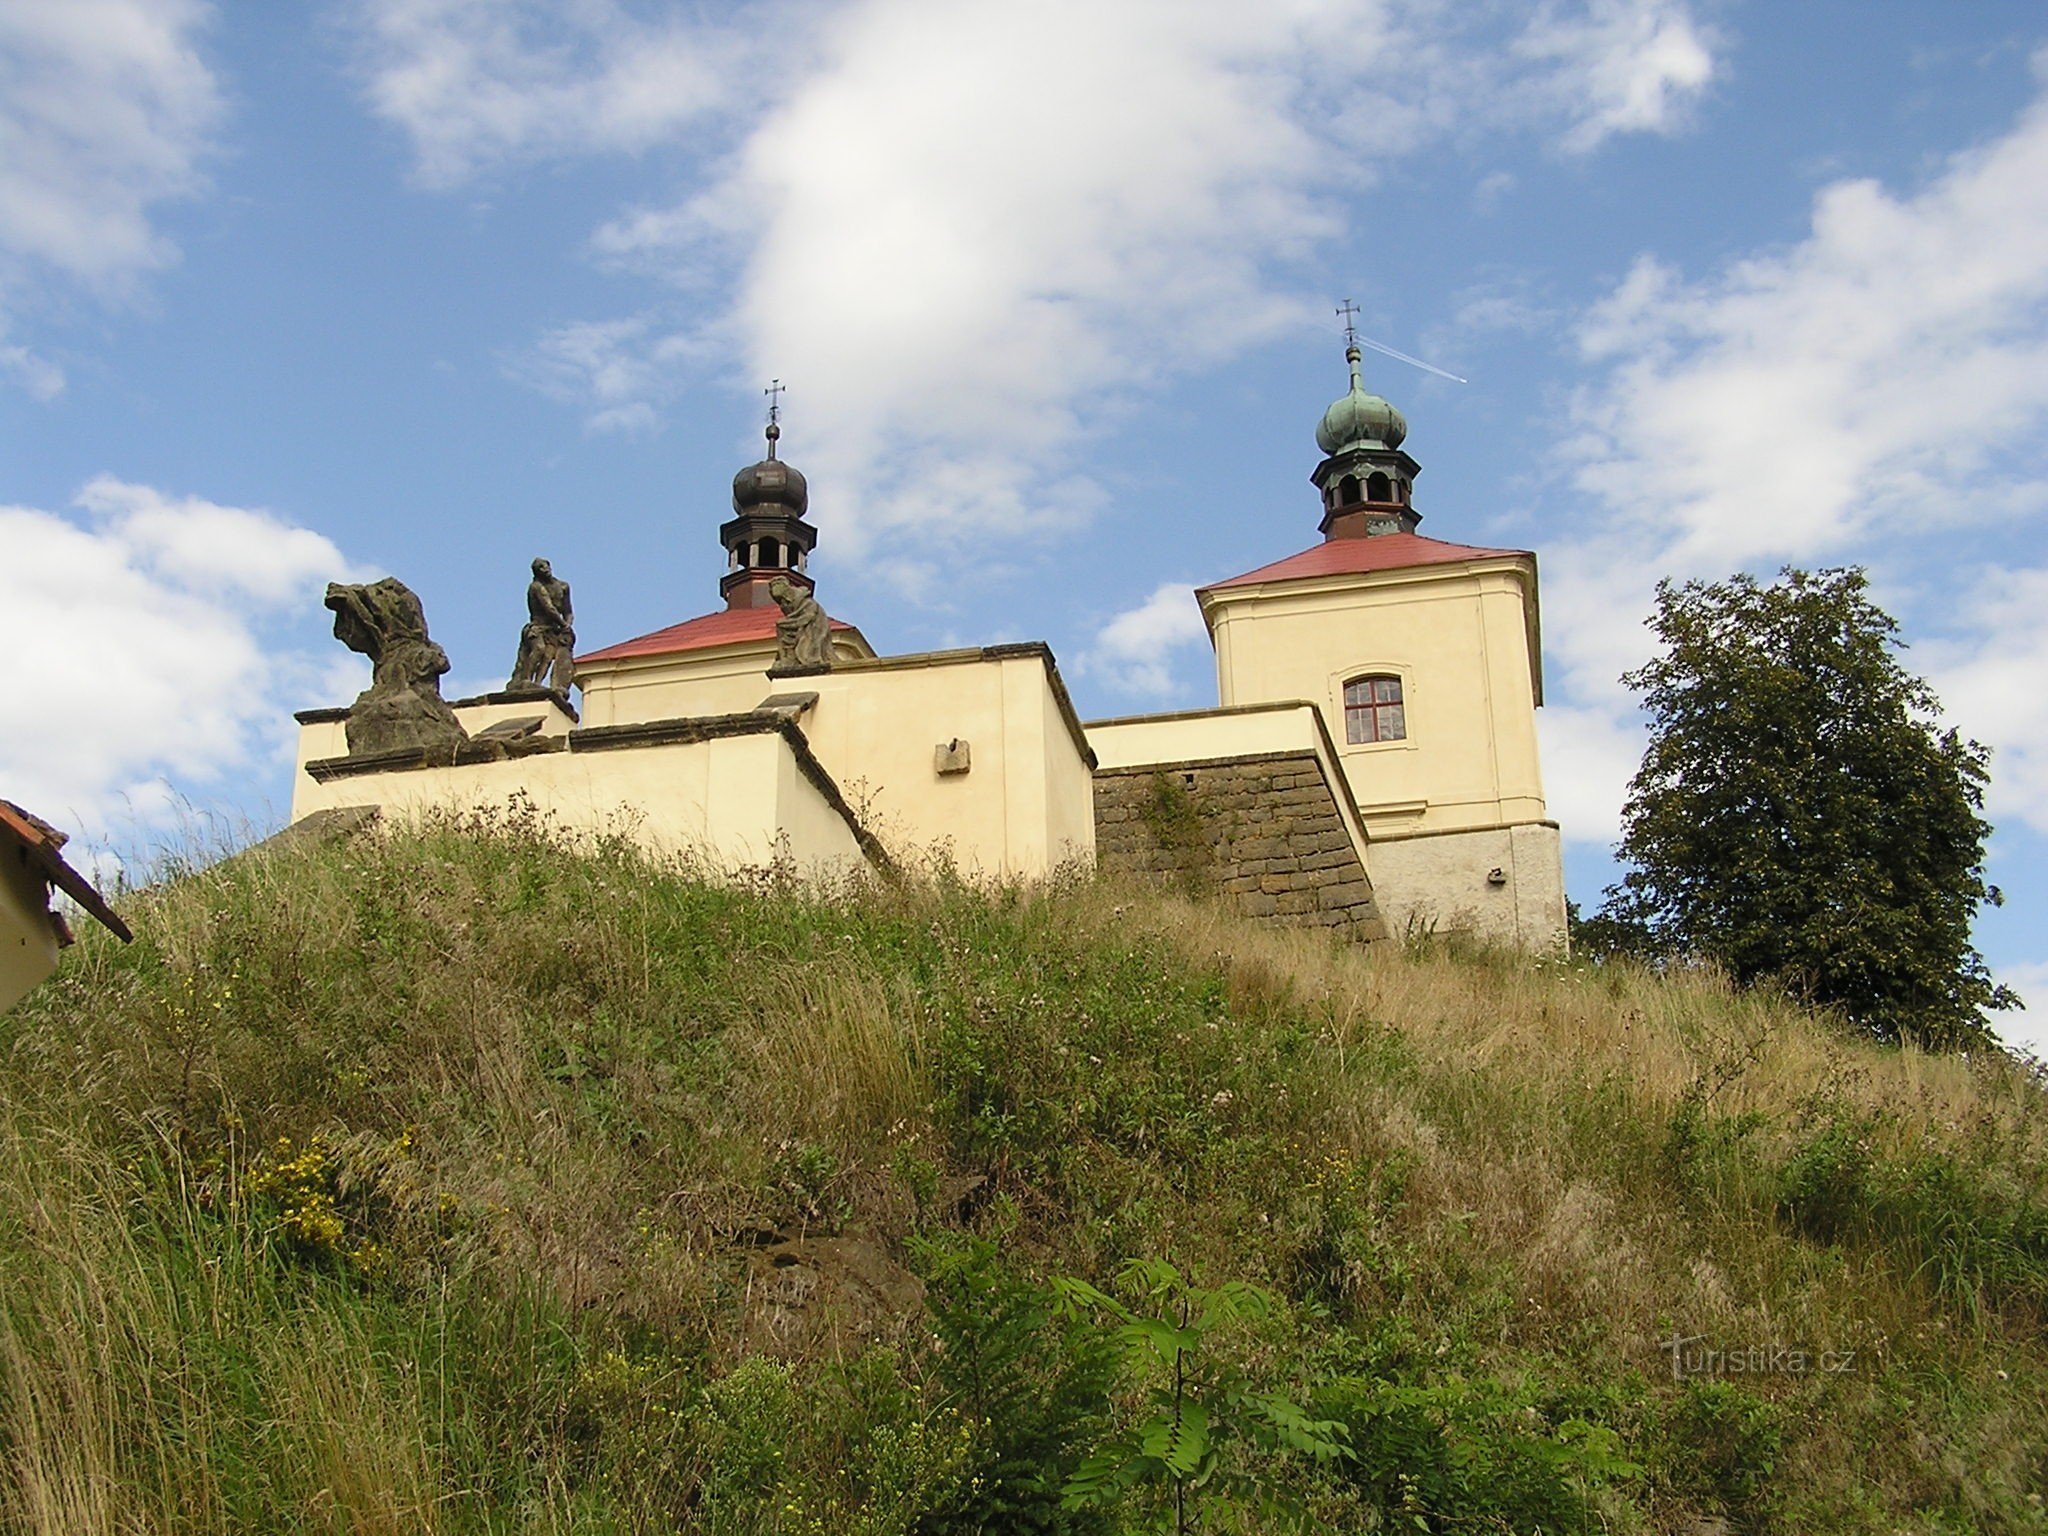 Sharp vicino a Úštěk (8/2014)